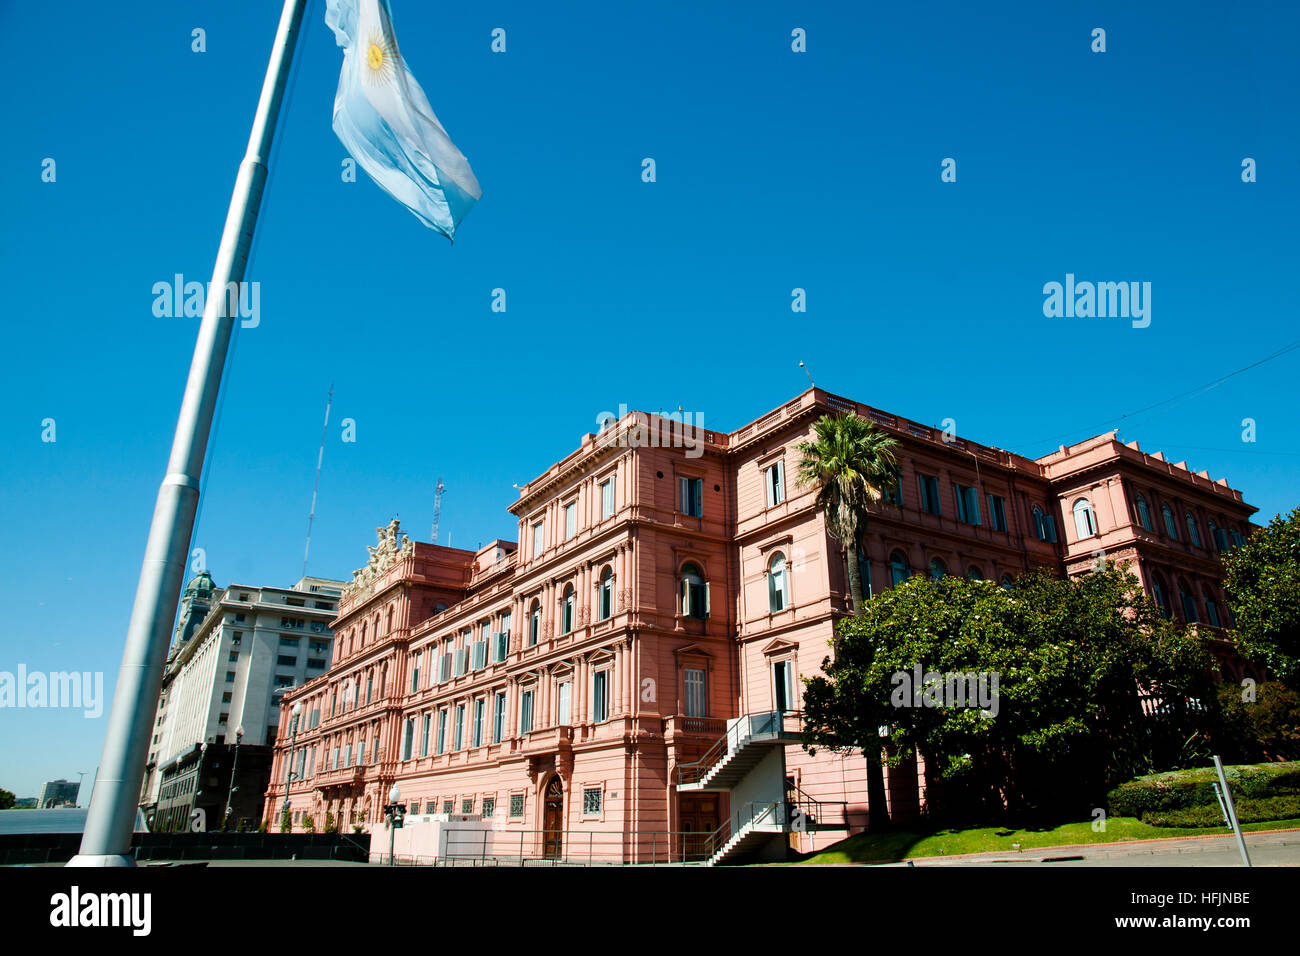 Maison Rose présidentiel (Casa Rosada) - Buenos Aires - Argentine Banque D'Images